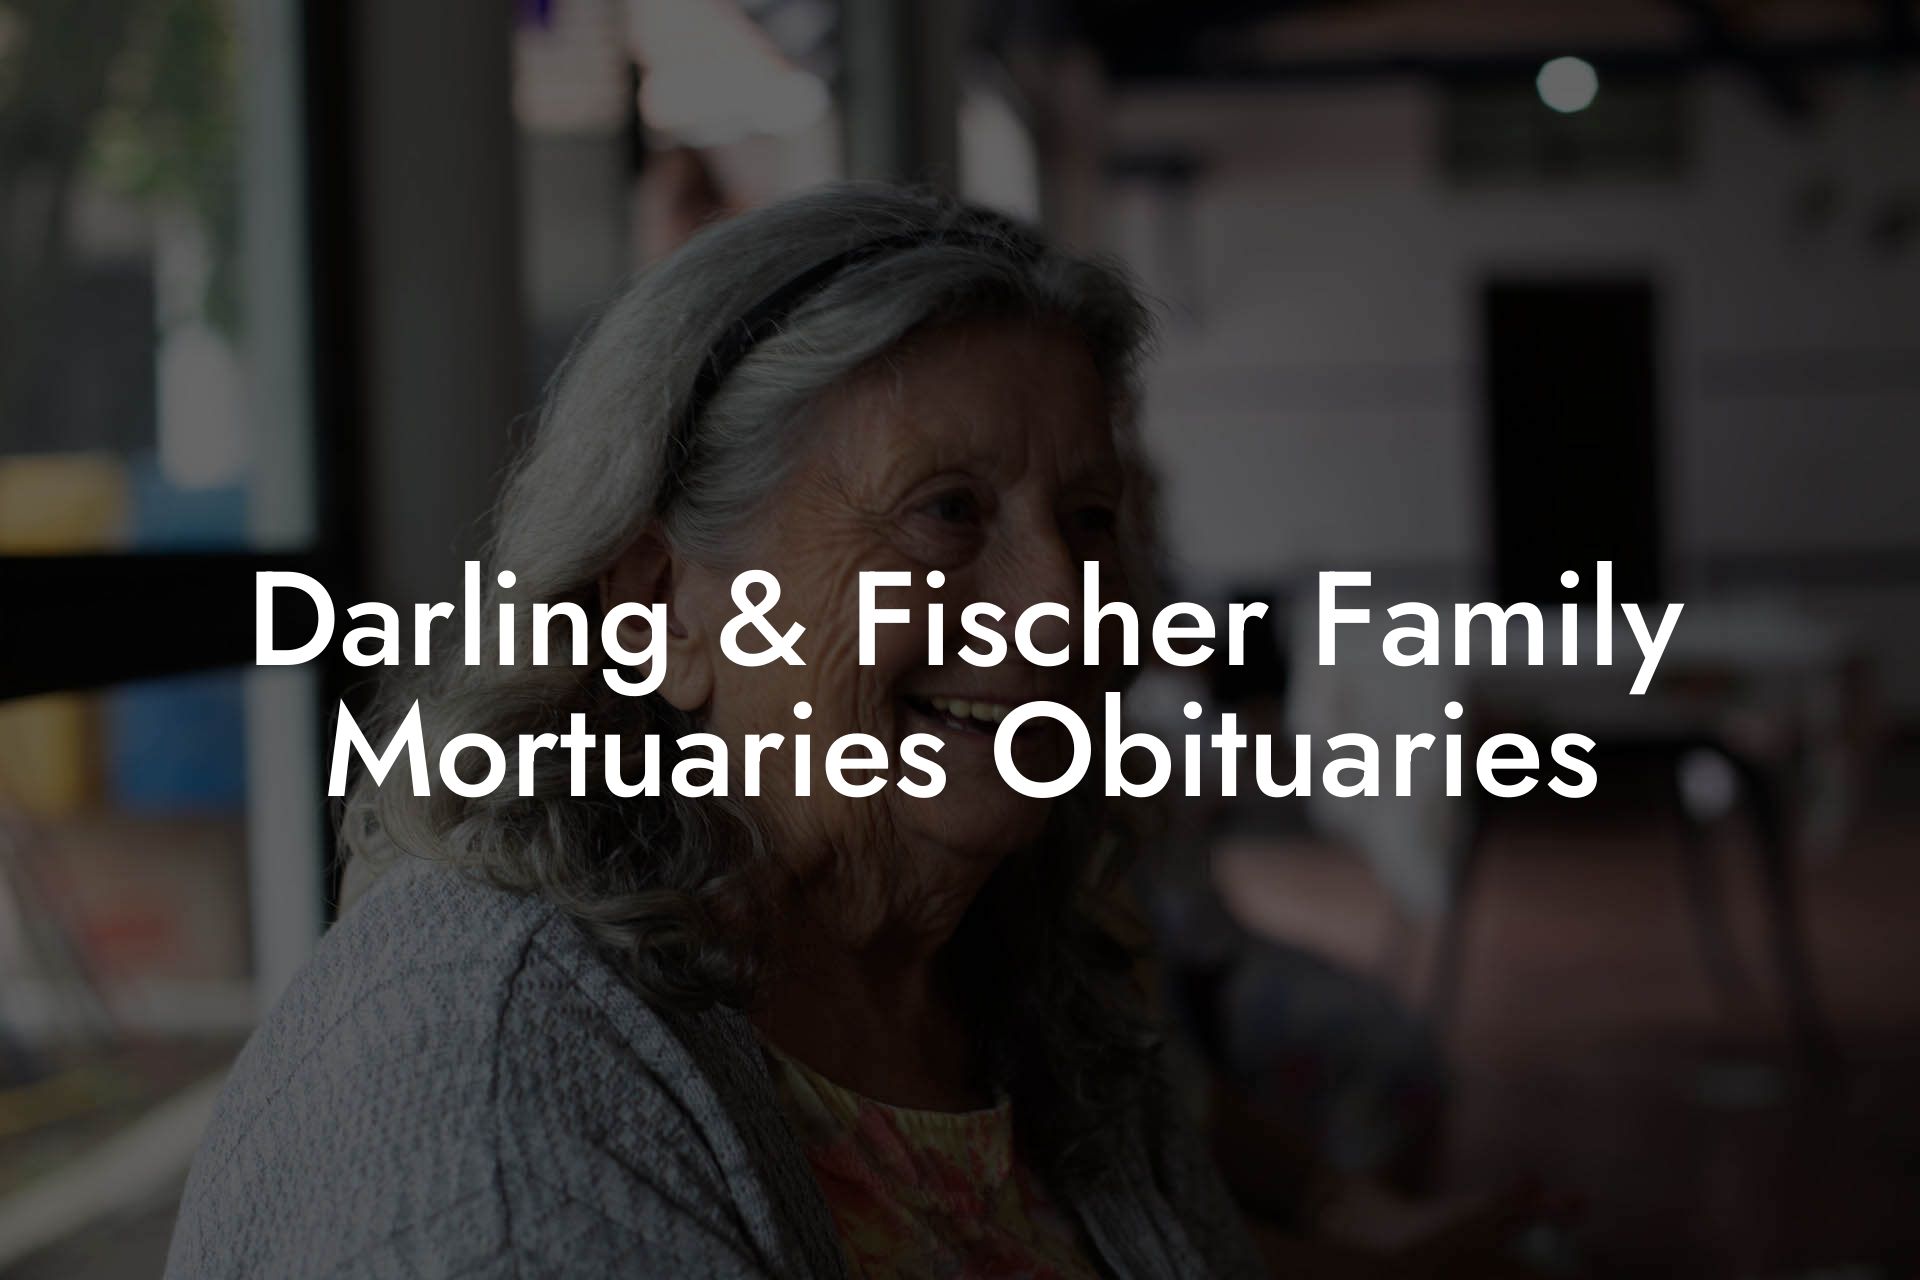 Darling & Fischer Family Mortuaries Obituaries